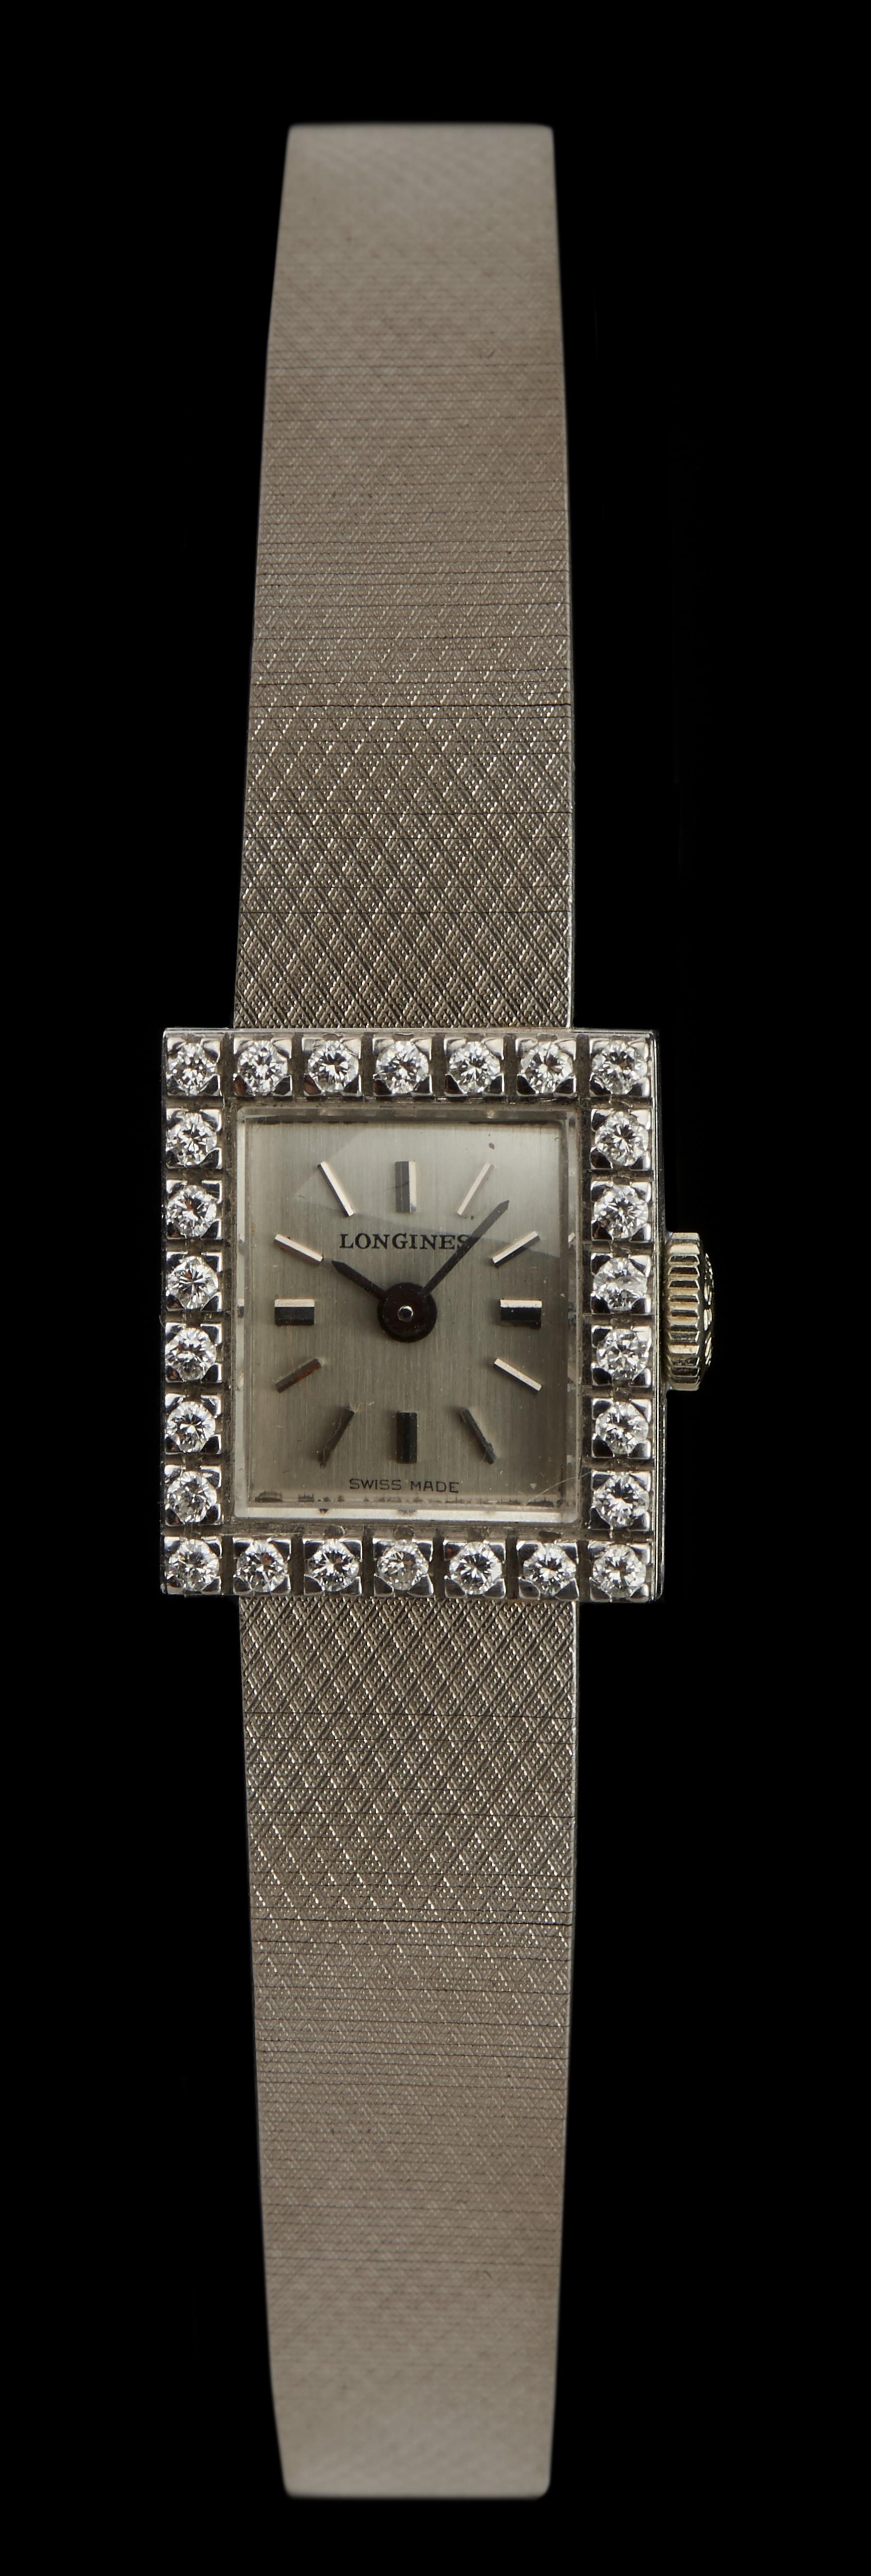 Longines, montre bracelet mécanique rectangulaire sertie de diamants